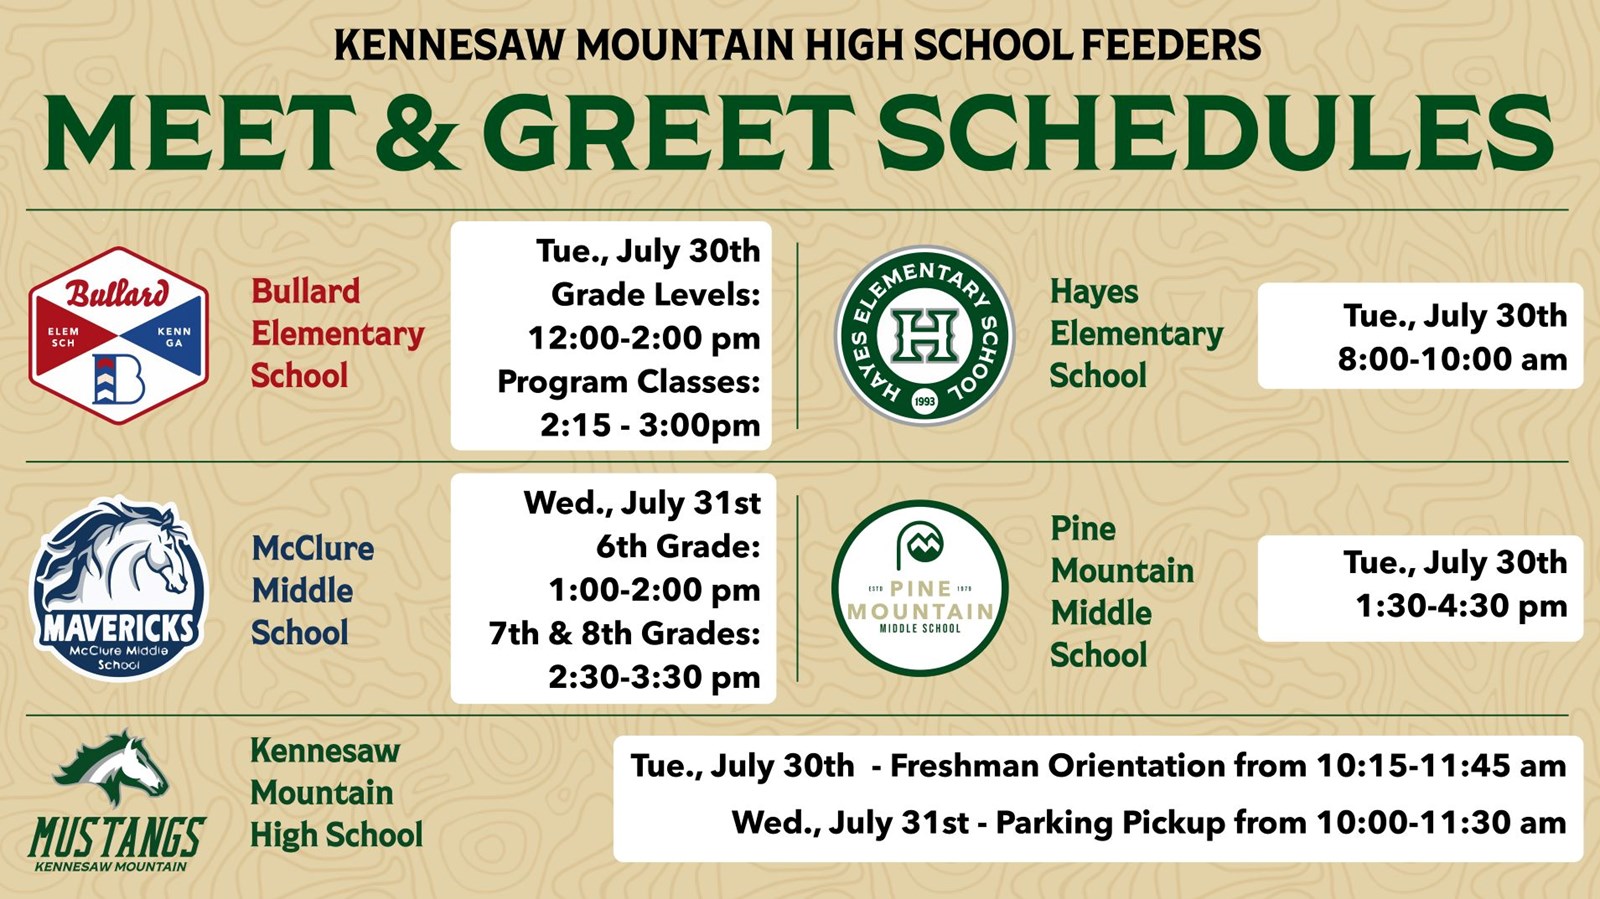 KMHS Feeders Meet & Greet Schedules - KMHS 7/30 Freshman Orientation 10:15-11:45 am, 7/31 Parking Pickup 10:00-11:30 am